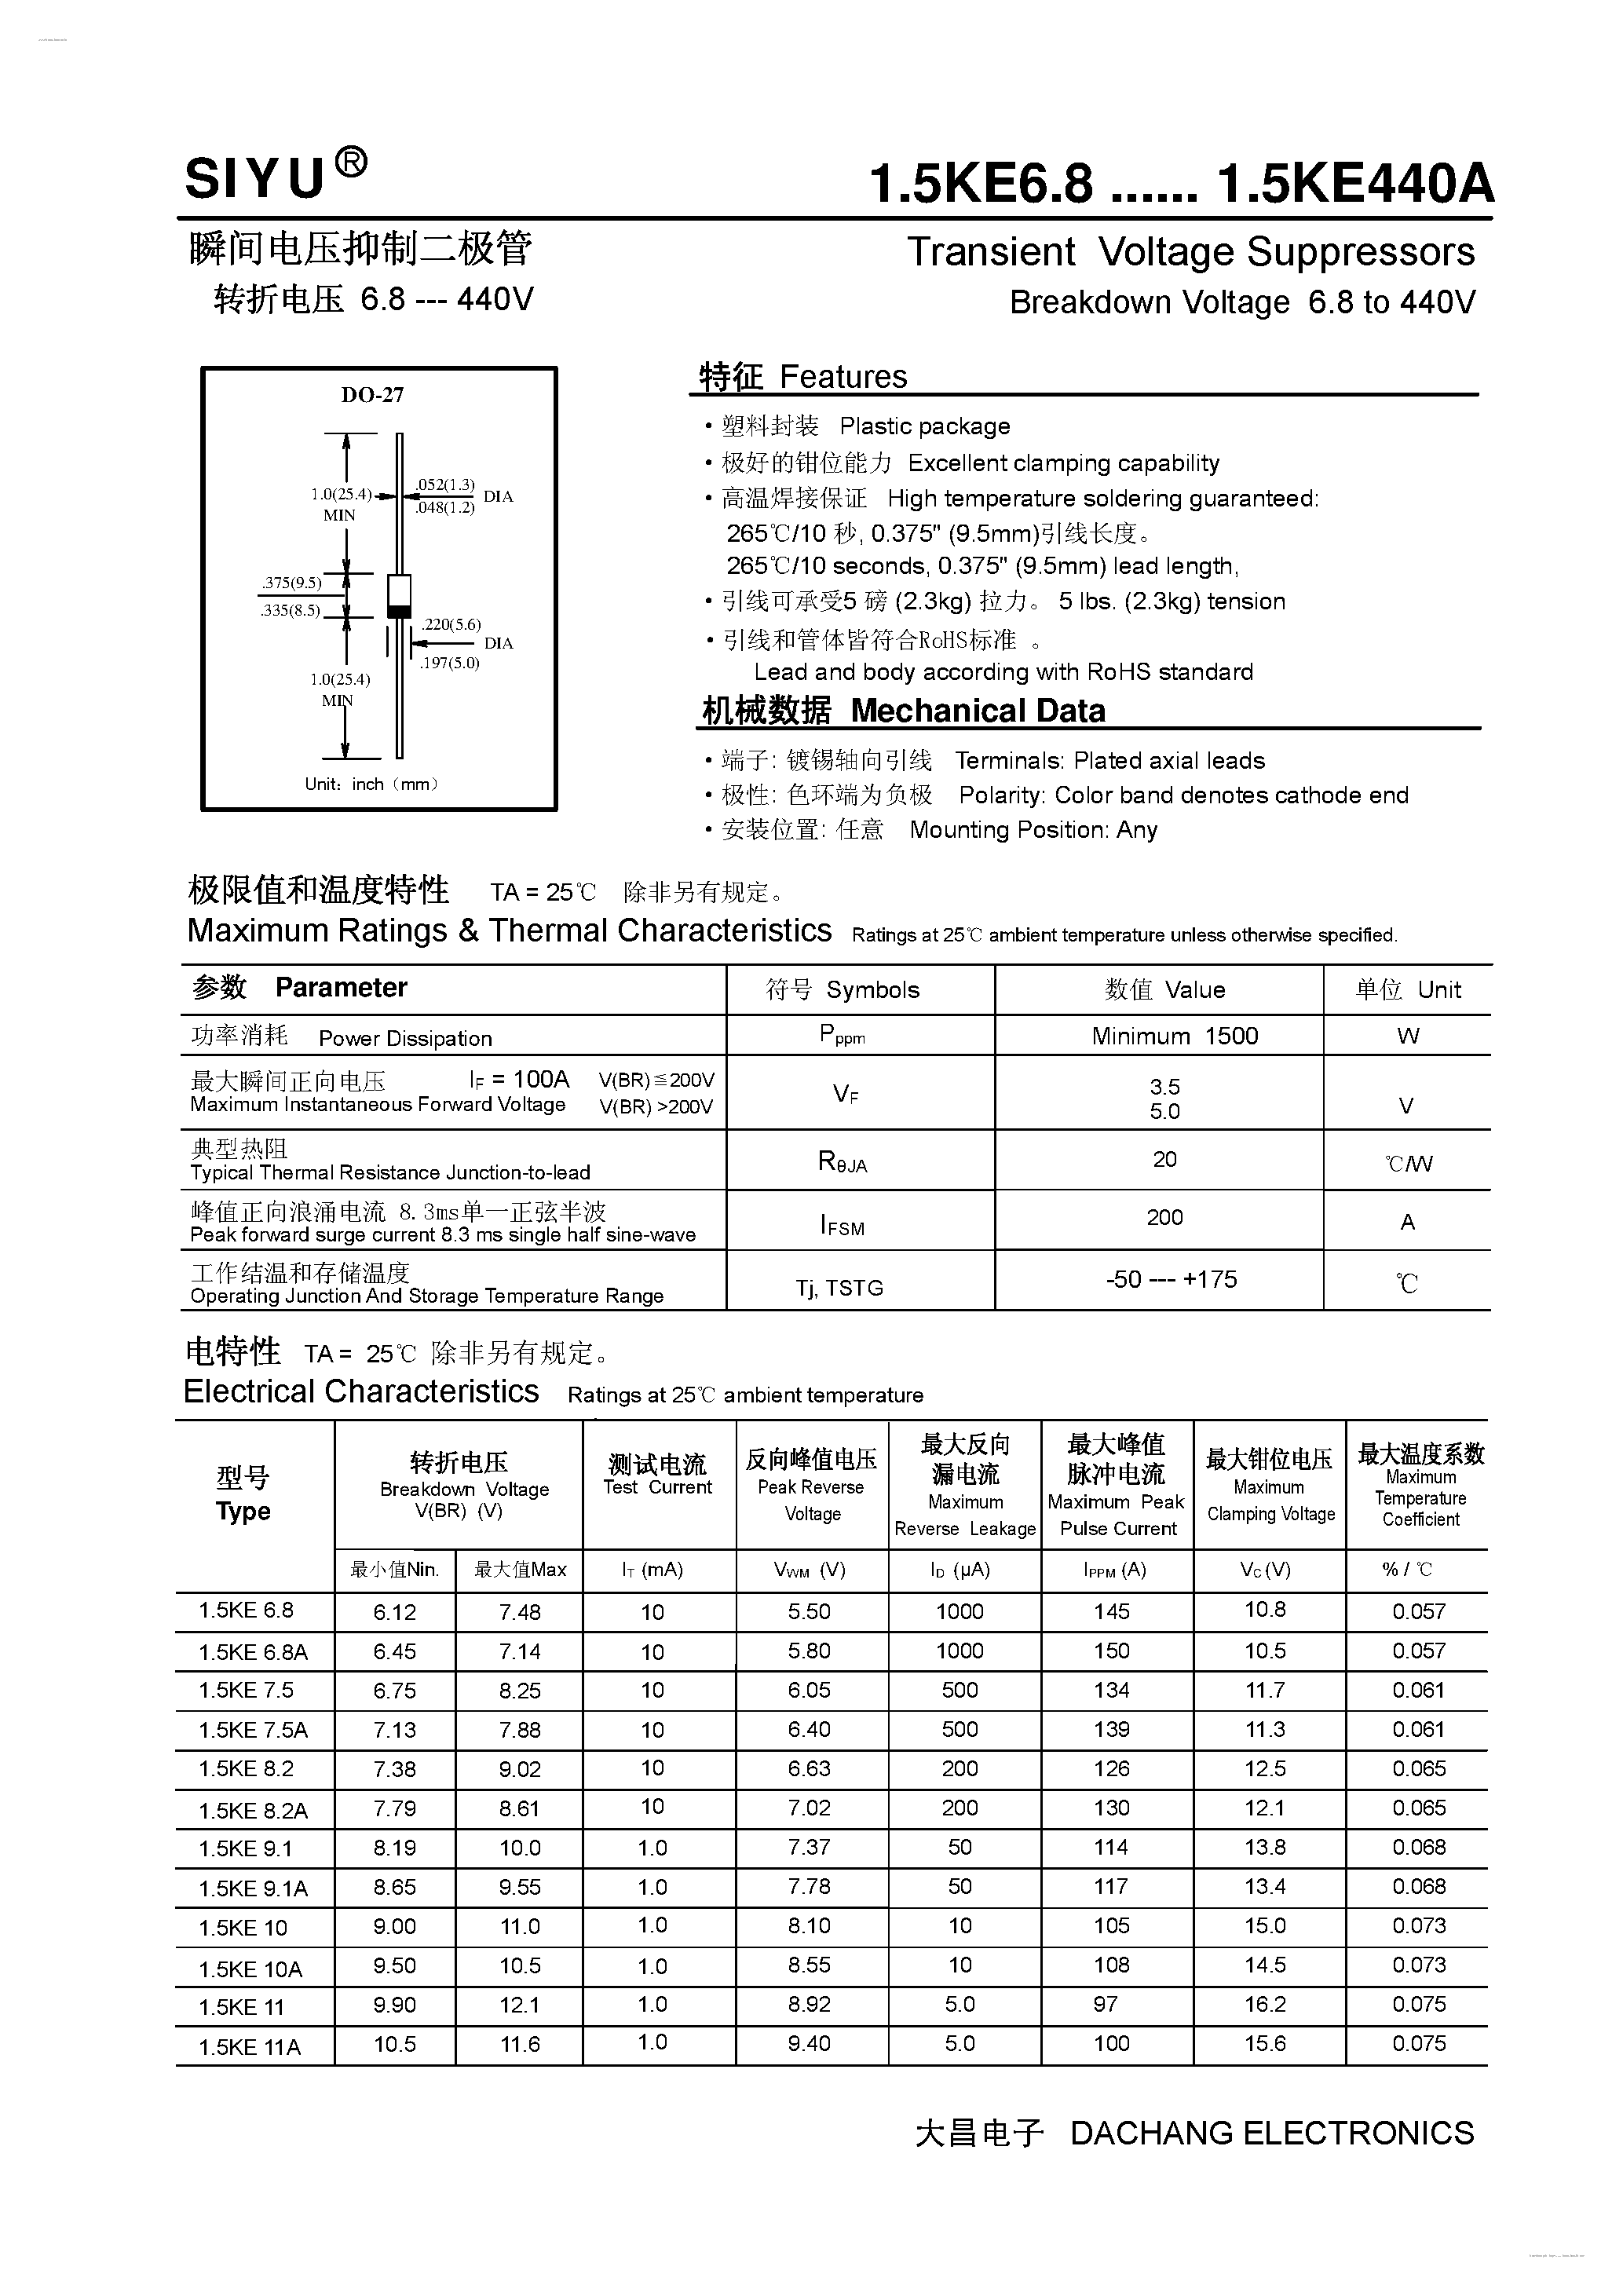 Datasheet 1.5KE100A - (1.5KE6.8 - 1.5KE440A) Transient Voltage Suppressors page 1